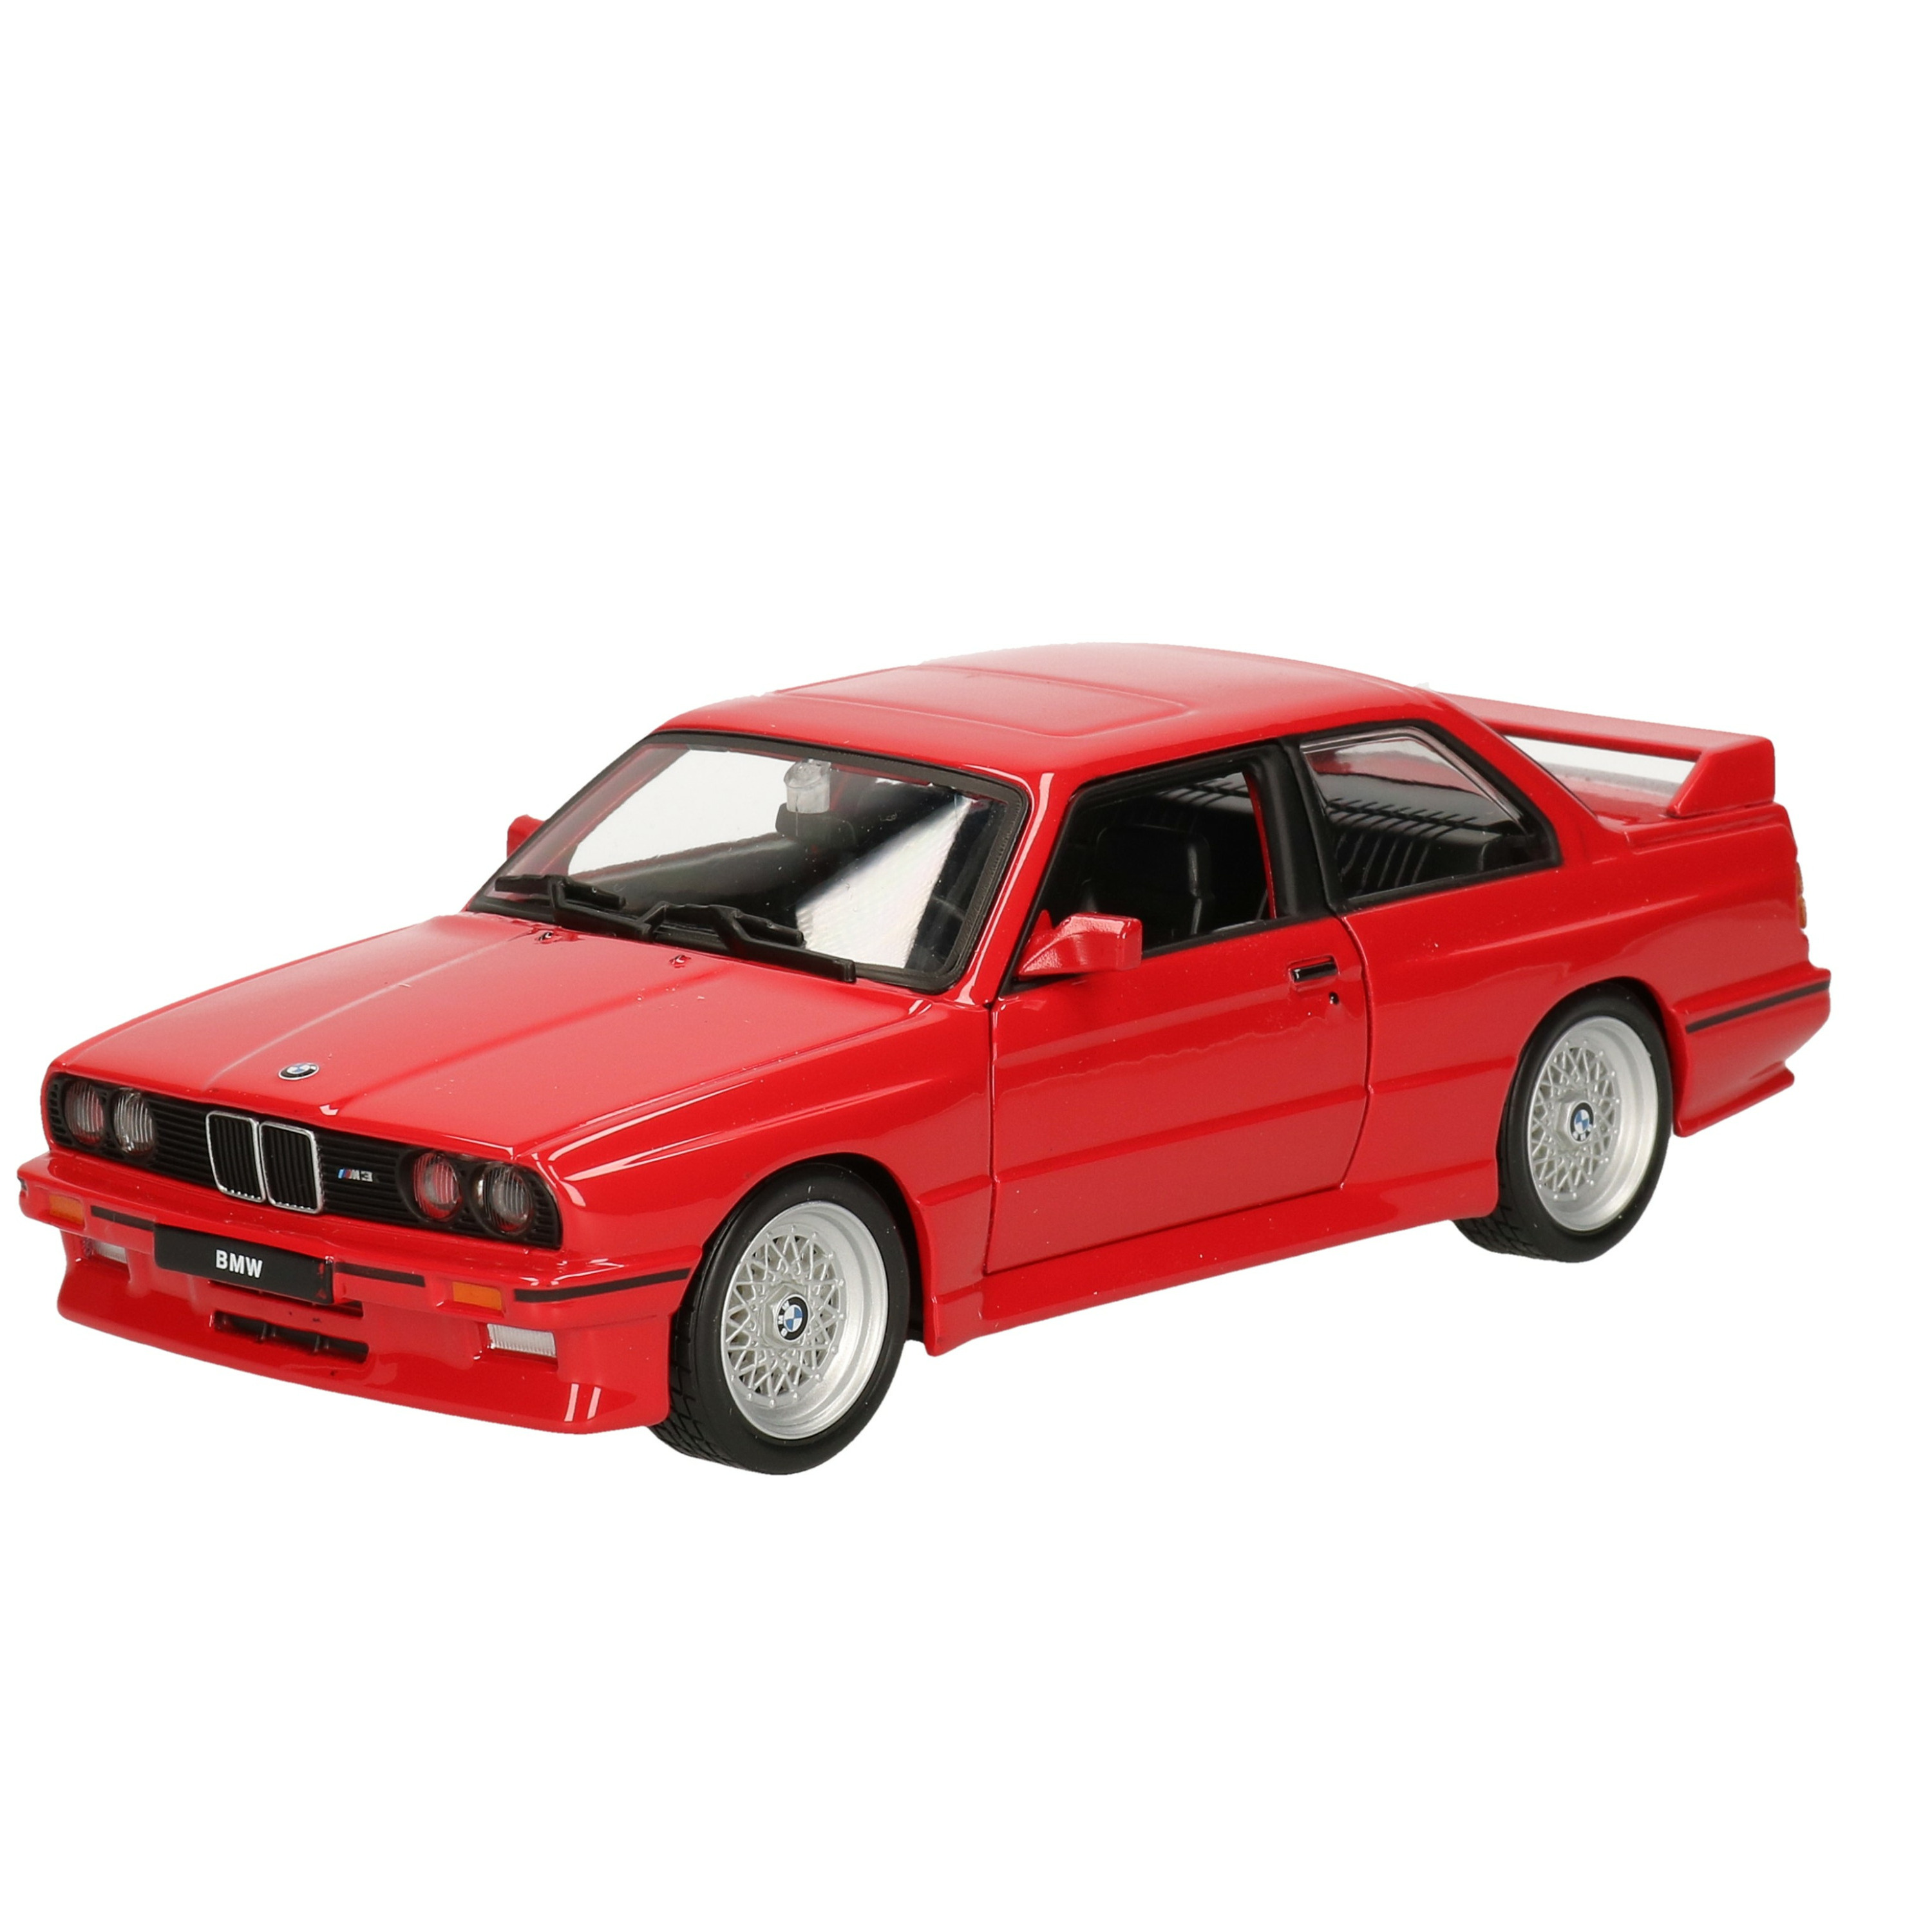 Modelauto-speelgoedauto BMW M3 1988 schaal 1:24-17 x 7 x 5 cm